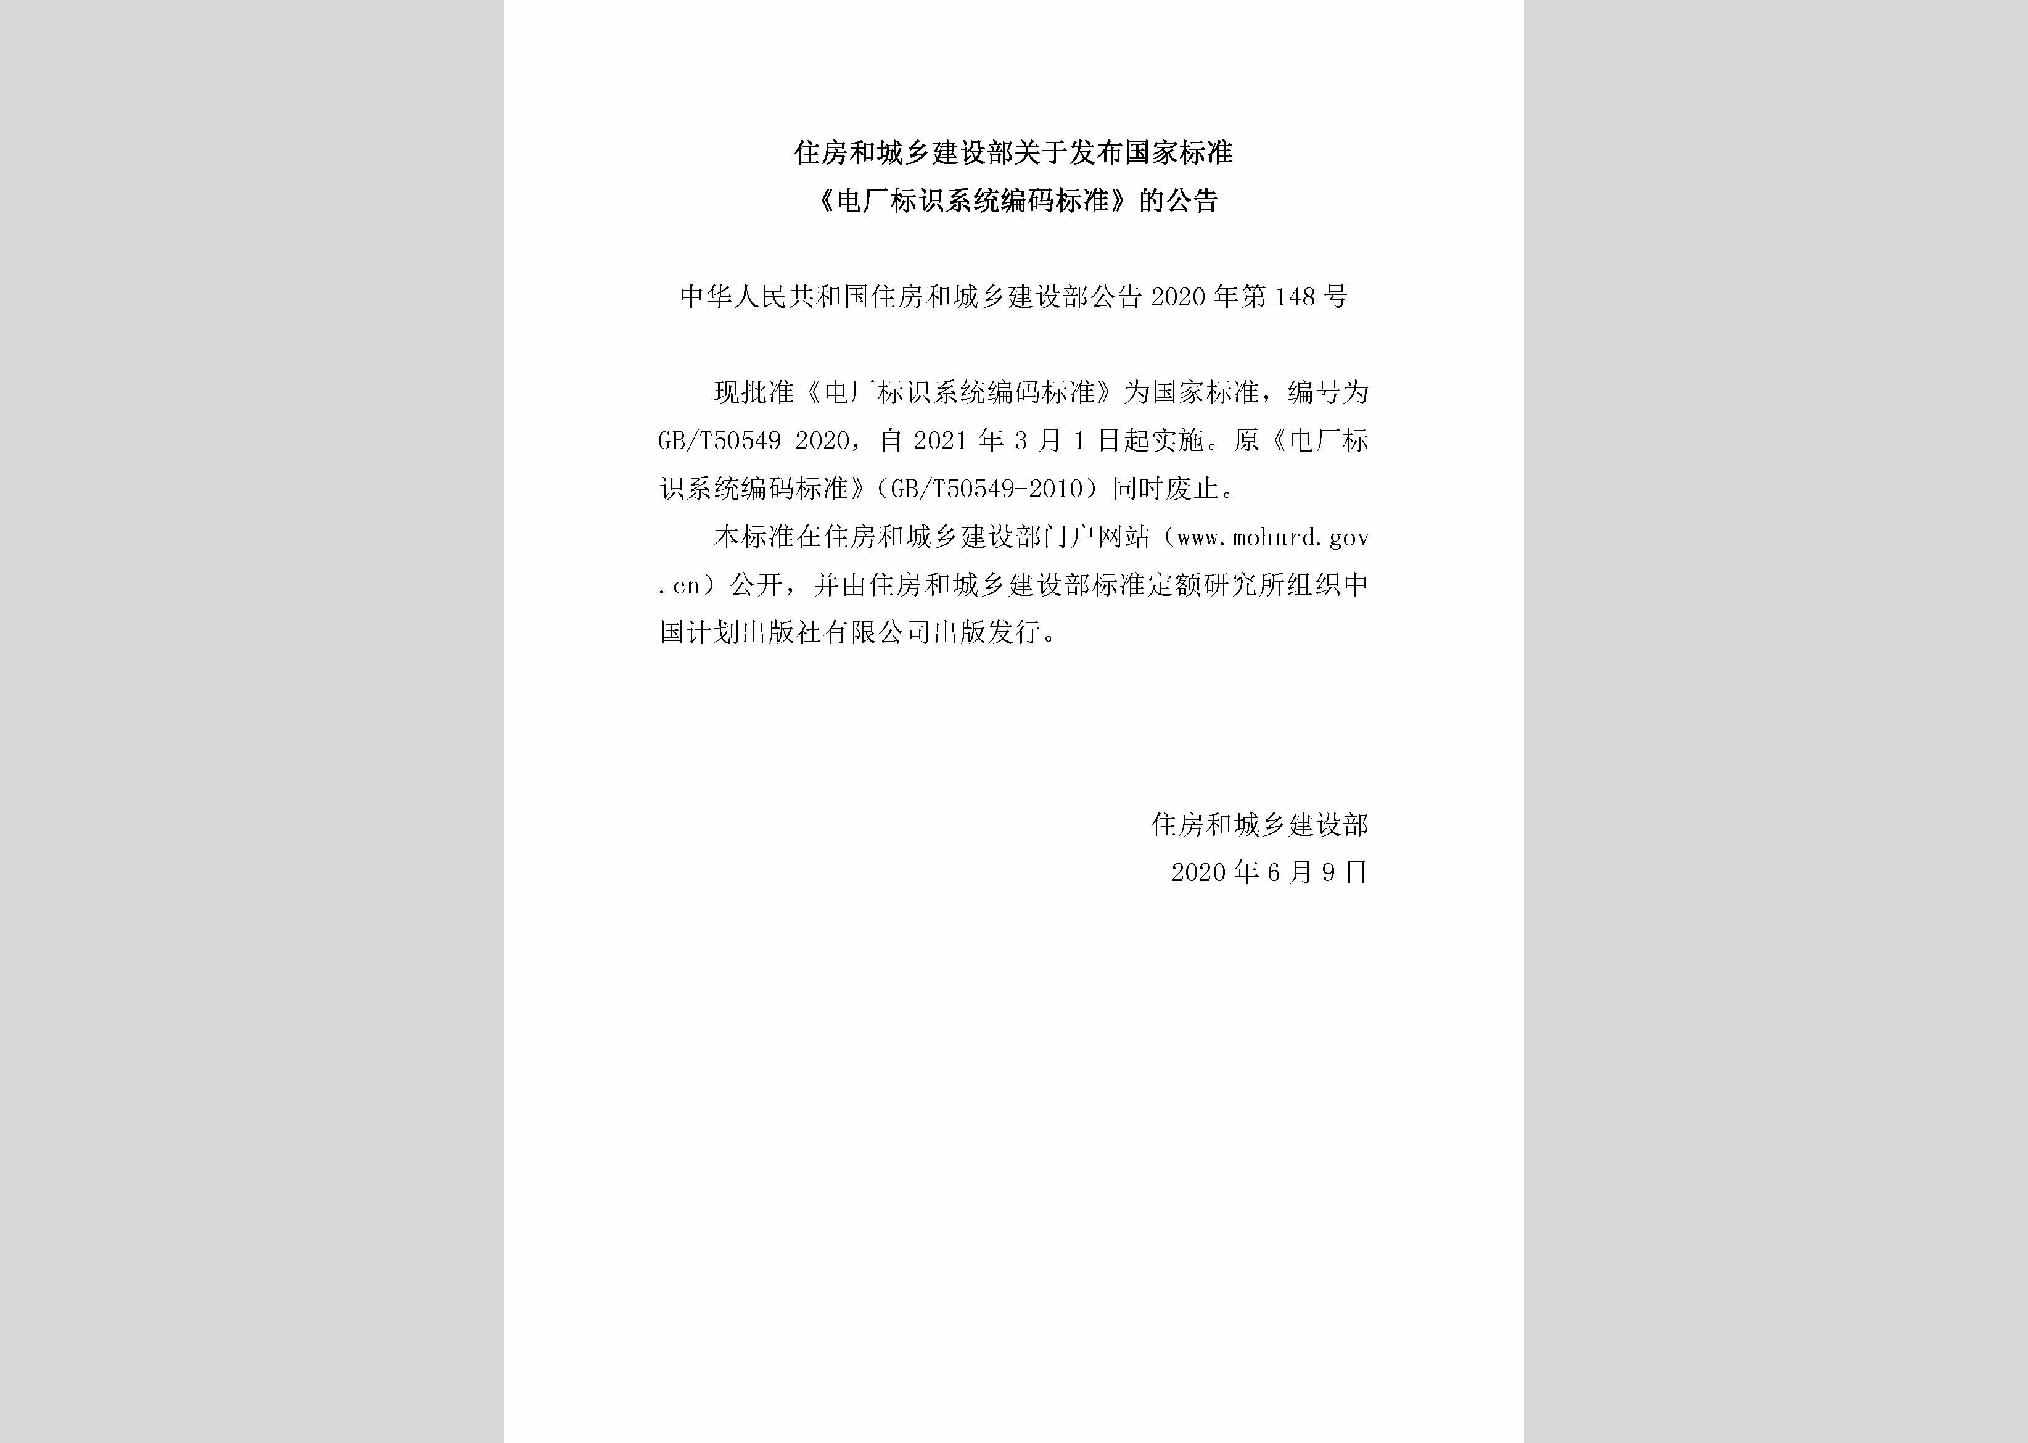 中华人民共和国住房和城乡建设部公告2020年第148号：关于发布国家标准《电厂标识系统编码标准》的公告